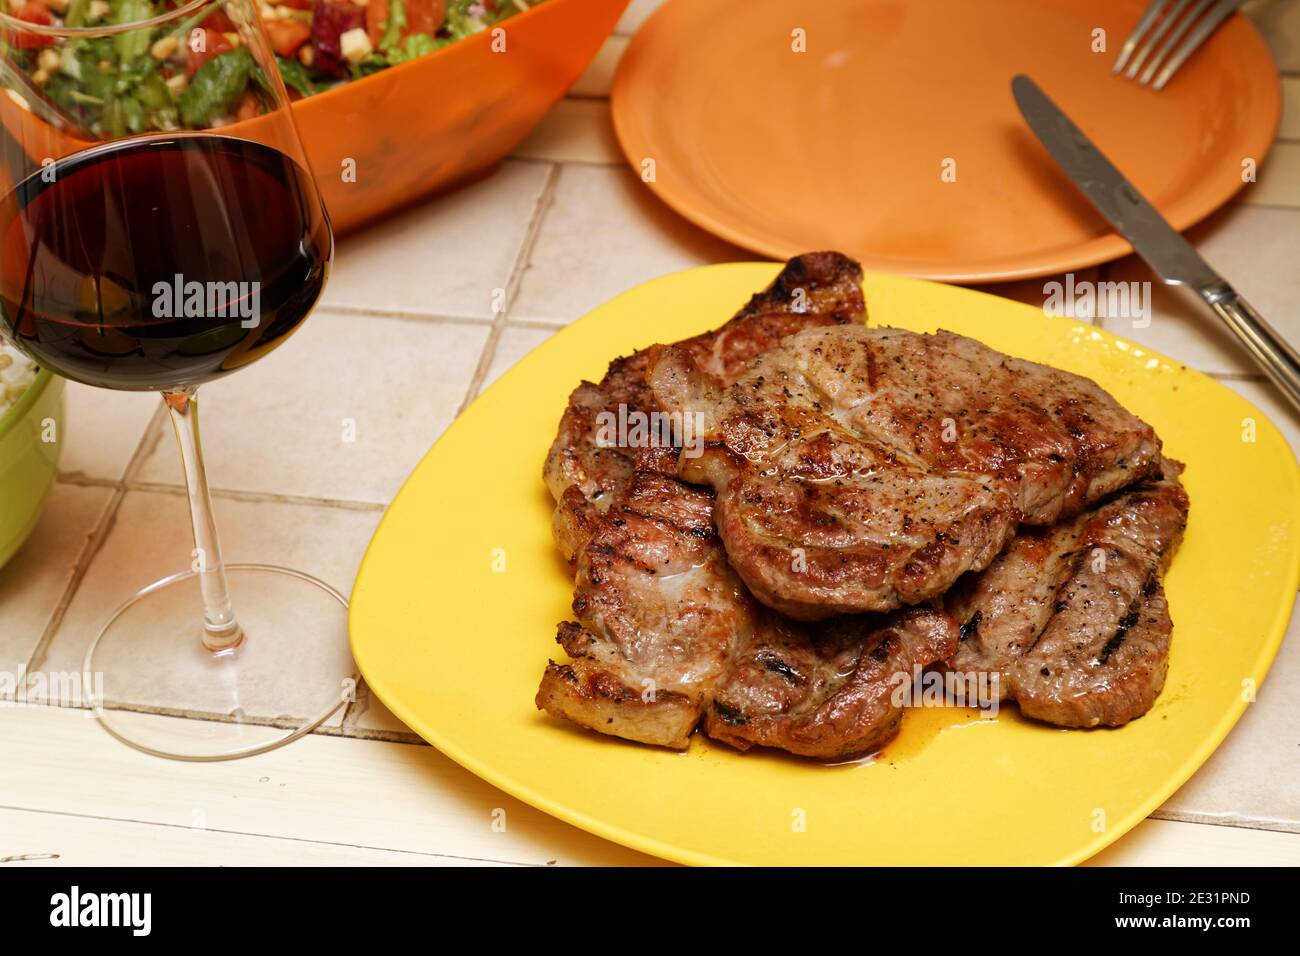 Gericht von gegrilltem Fleisch auf einem Tisch in der Nähe von einem Ein Glas Rotwein Stockfoto